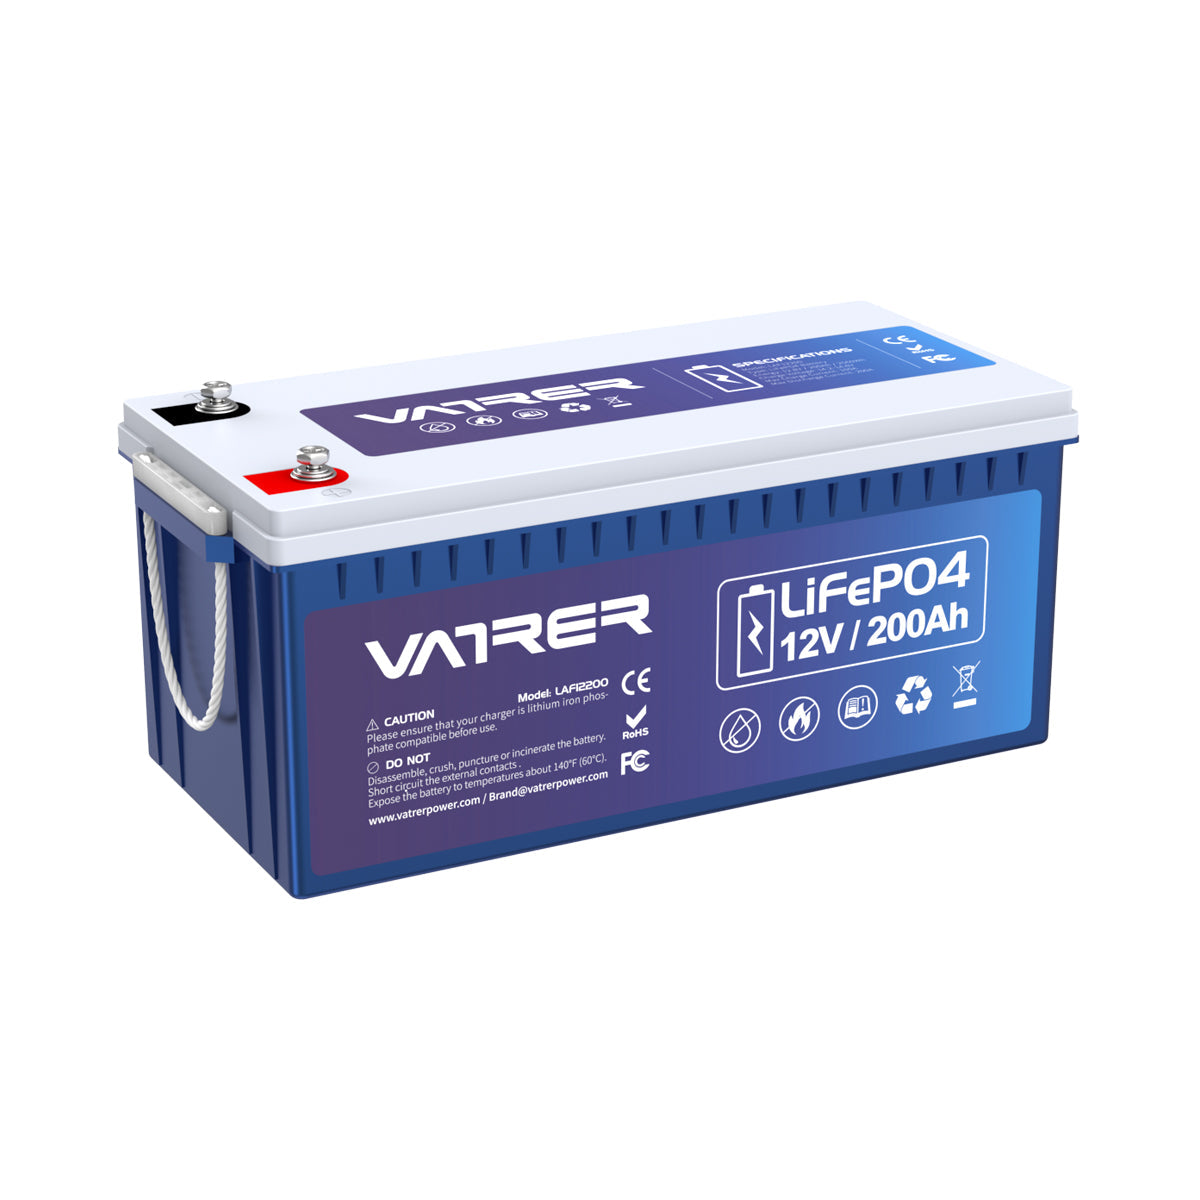 12V 200Ah Plus LiFePO4 リチウム電池、内蔵 200A BMS & 低温カットオフ 9